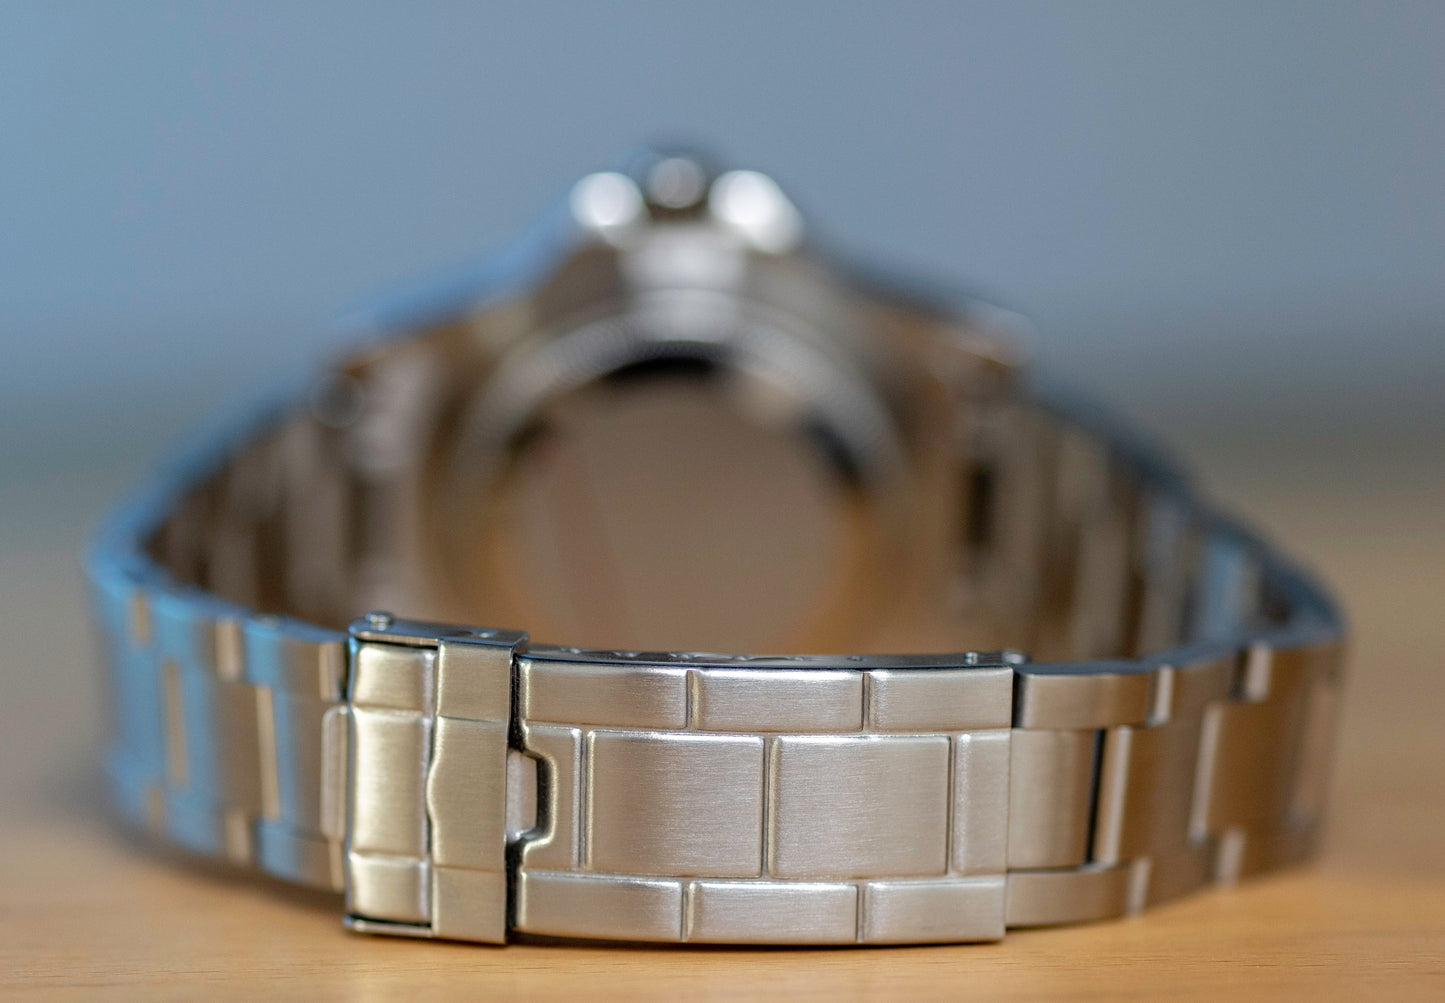 Custom Seiko Mod Milsub Watch Oyster Bracelet by Kool Mods